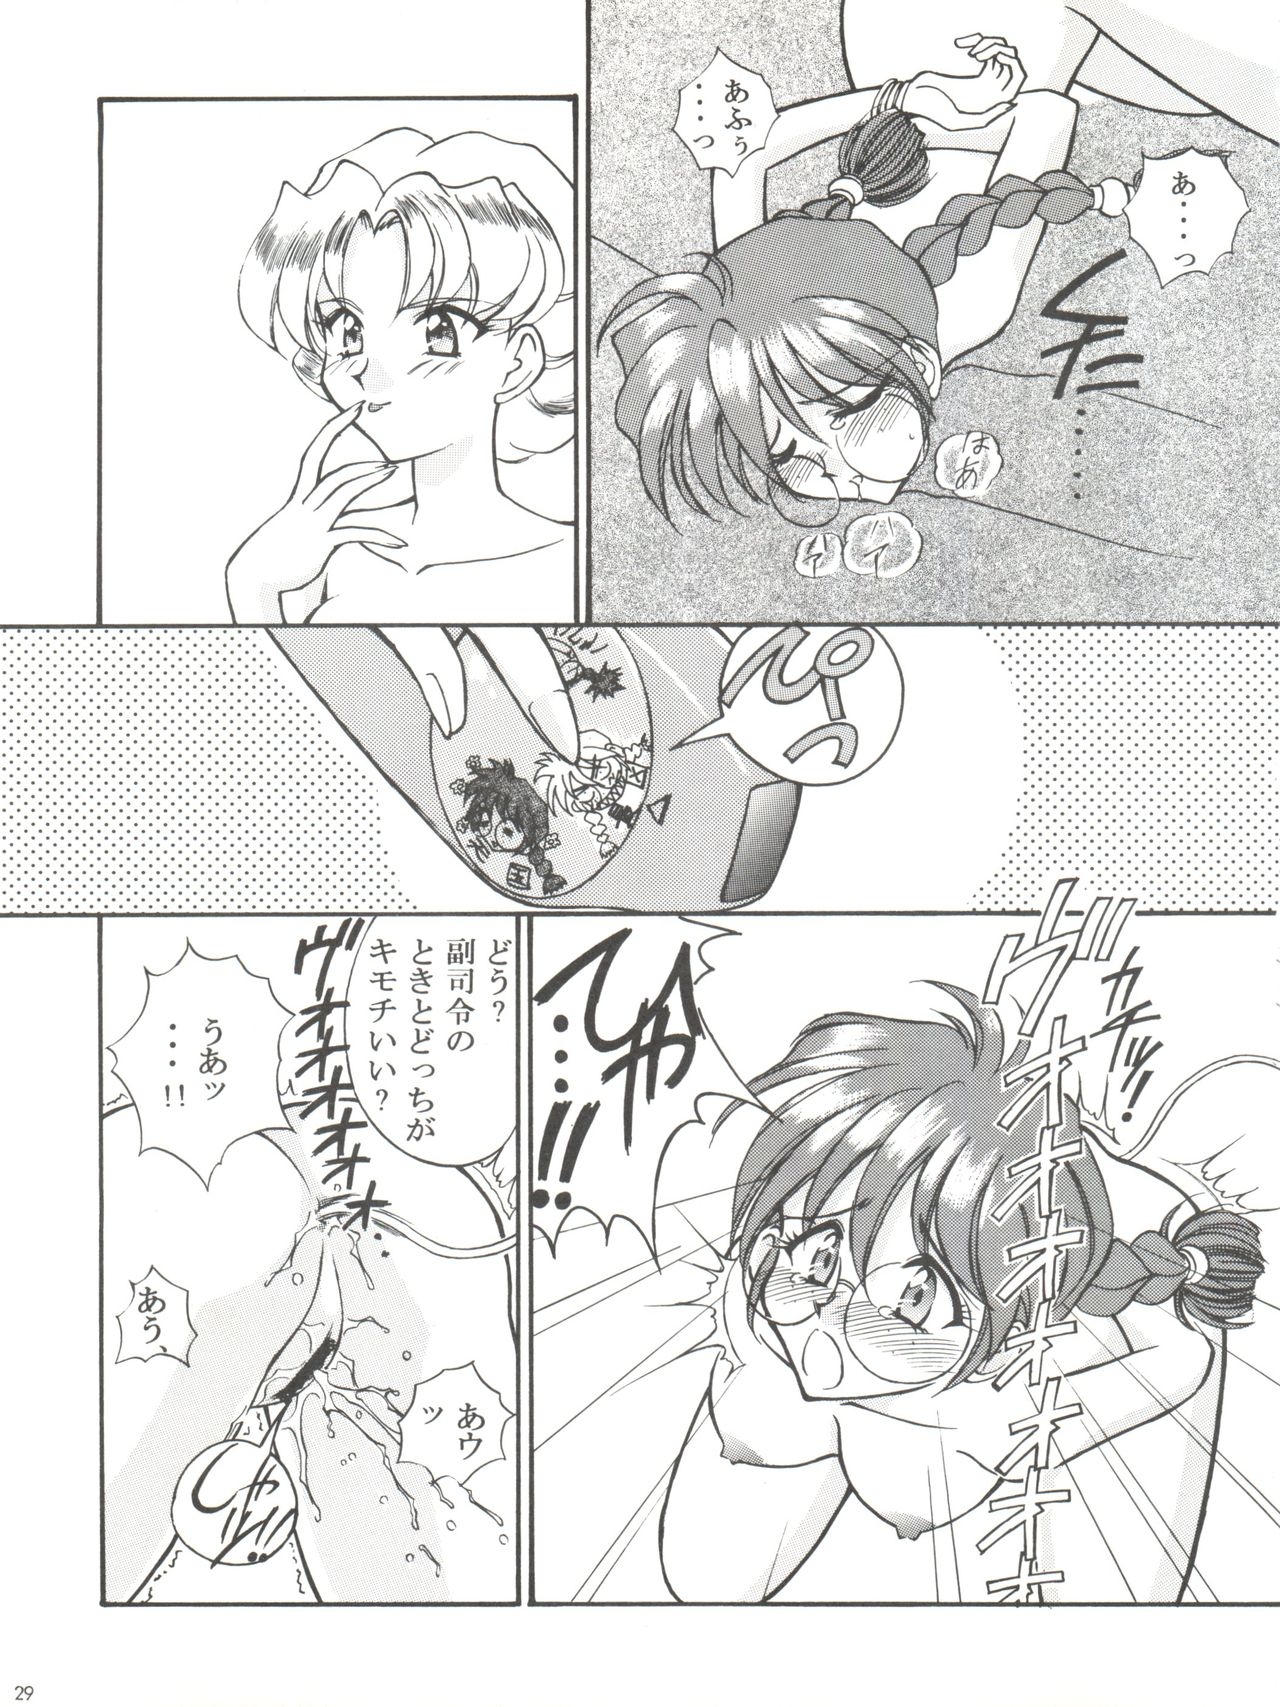 [LUCK&PLUCK!Co. (Amanomiya Haruka)] Li Kohran no Gottsuee Kanji (Sakura Wars) [1997-05-25] 29